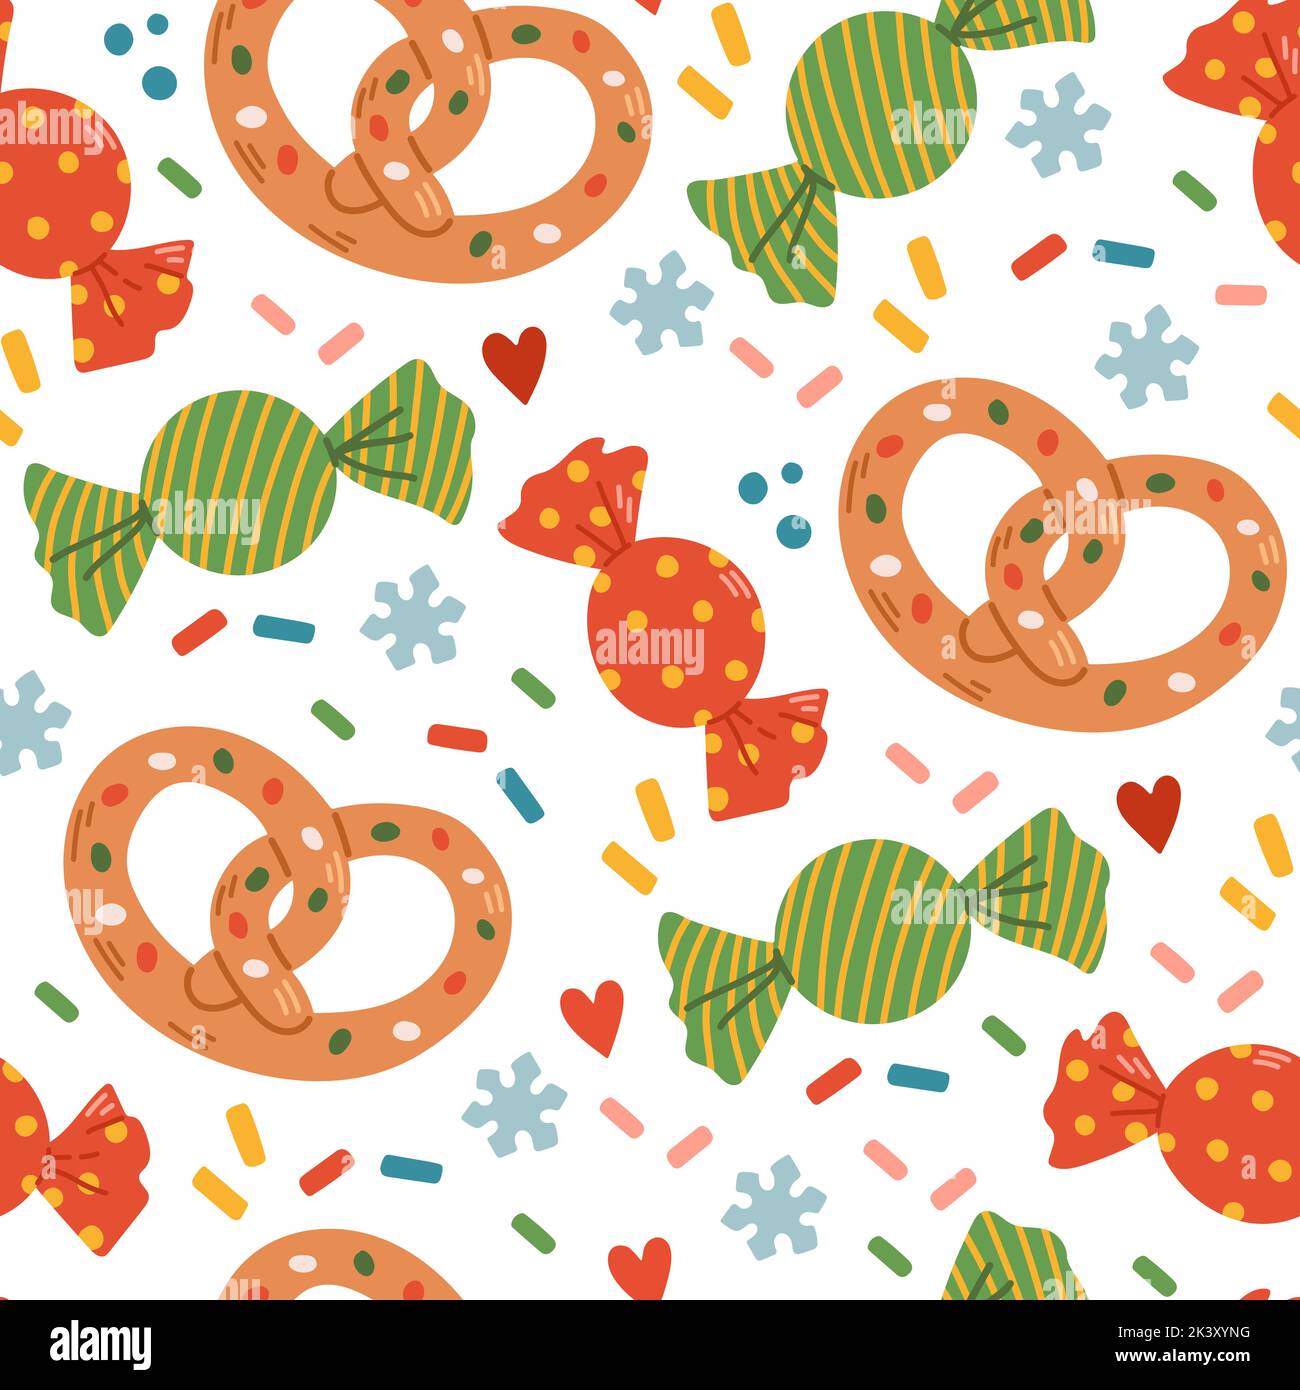 Weihnachten Süßigkeiten Muster einfache flache Design-Vektor Stock Vektor